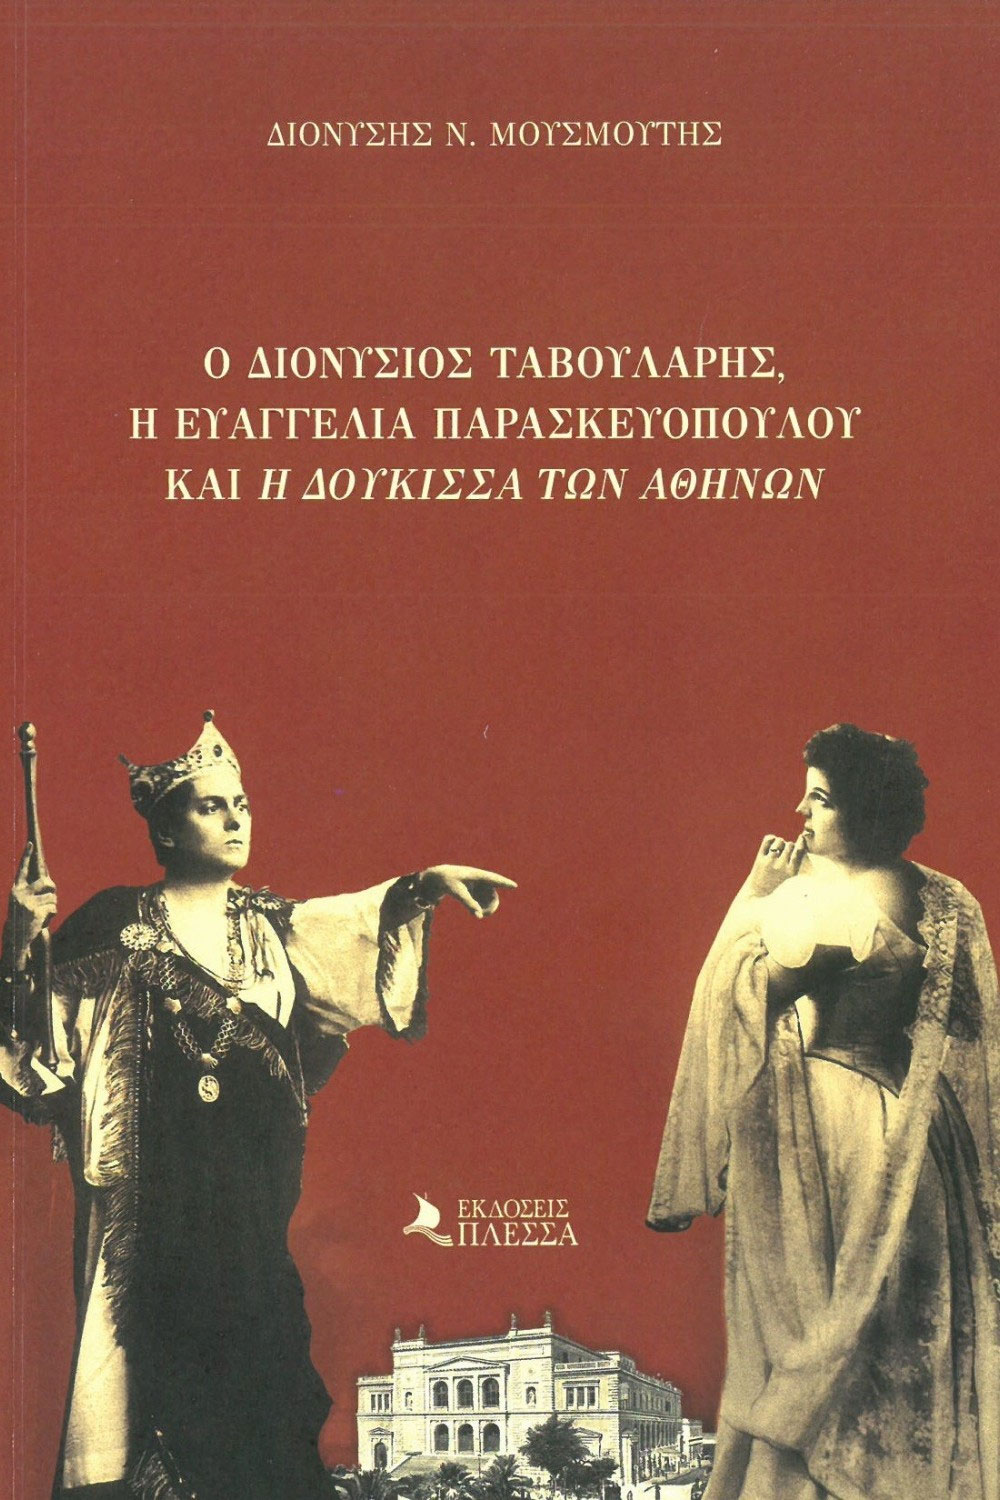 Ο Διονύσιος Ταβουλάρης, η Ευαγγελία Παρασκευοπούλου και “η Δούκισσα των Αθηνών”